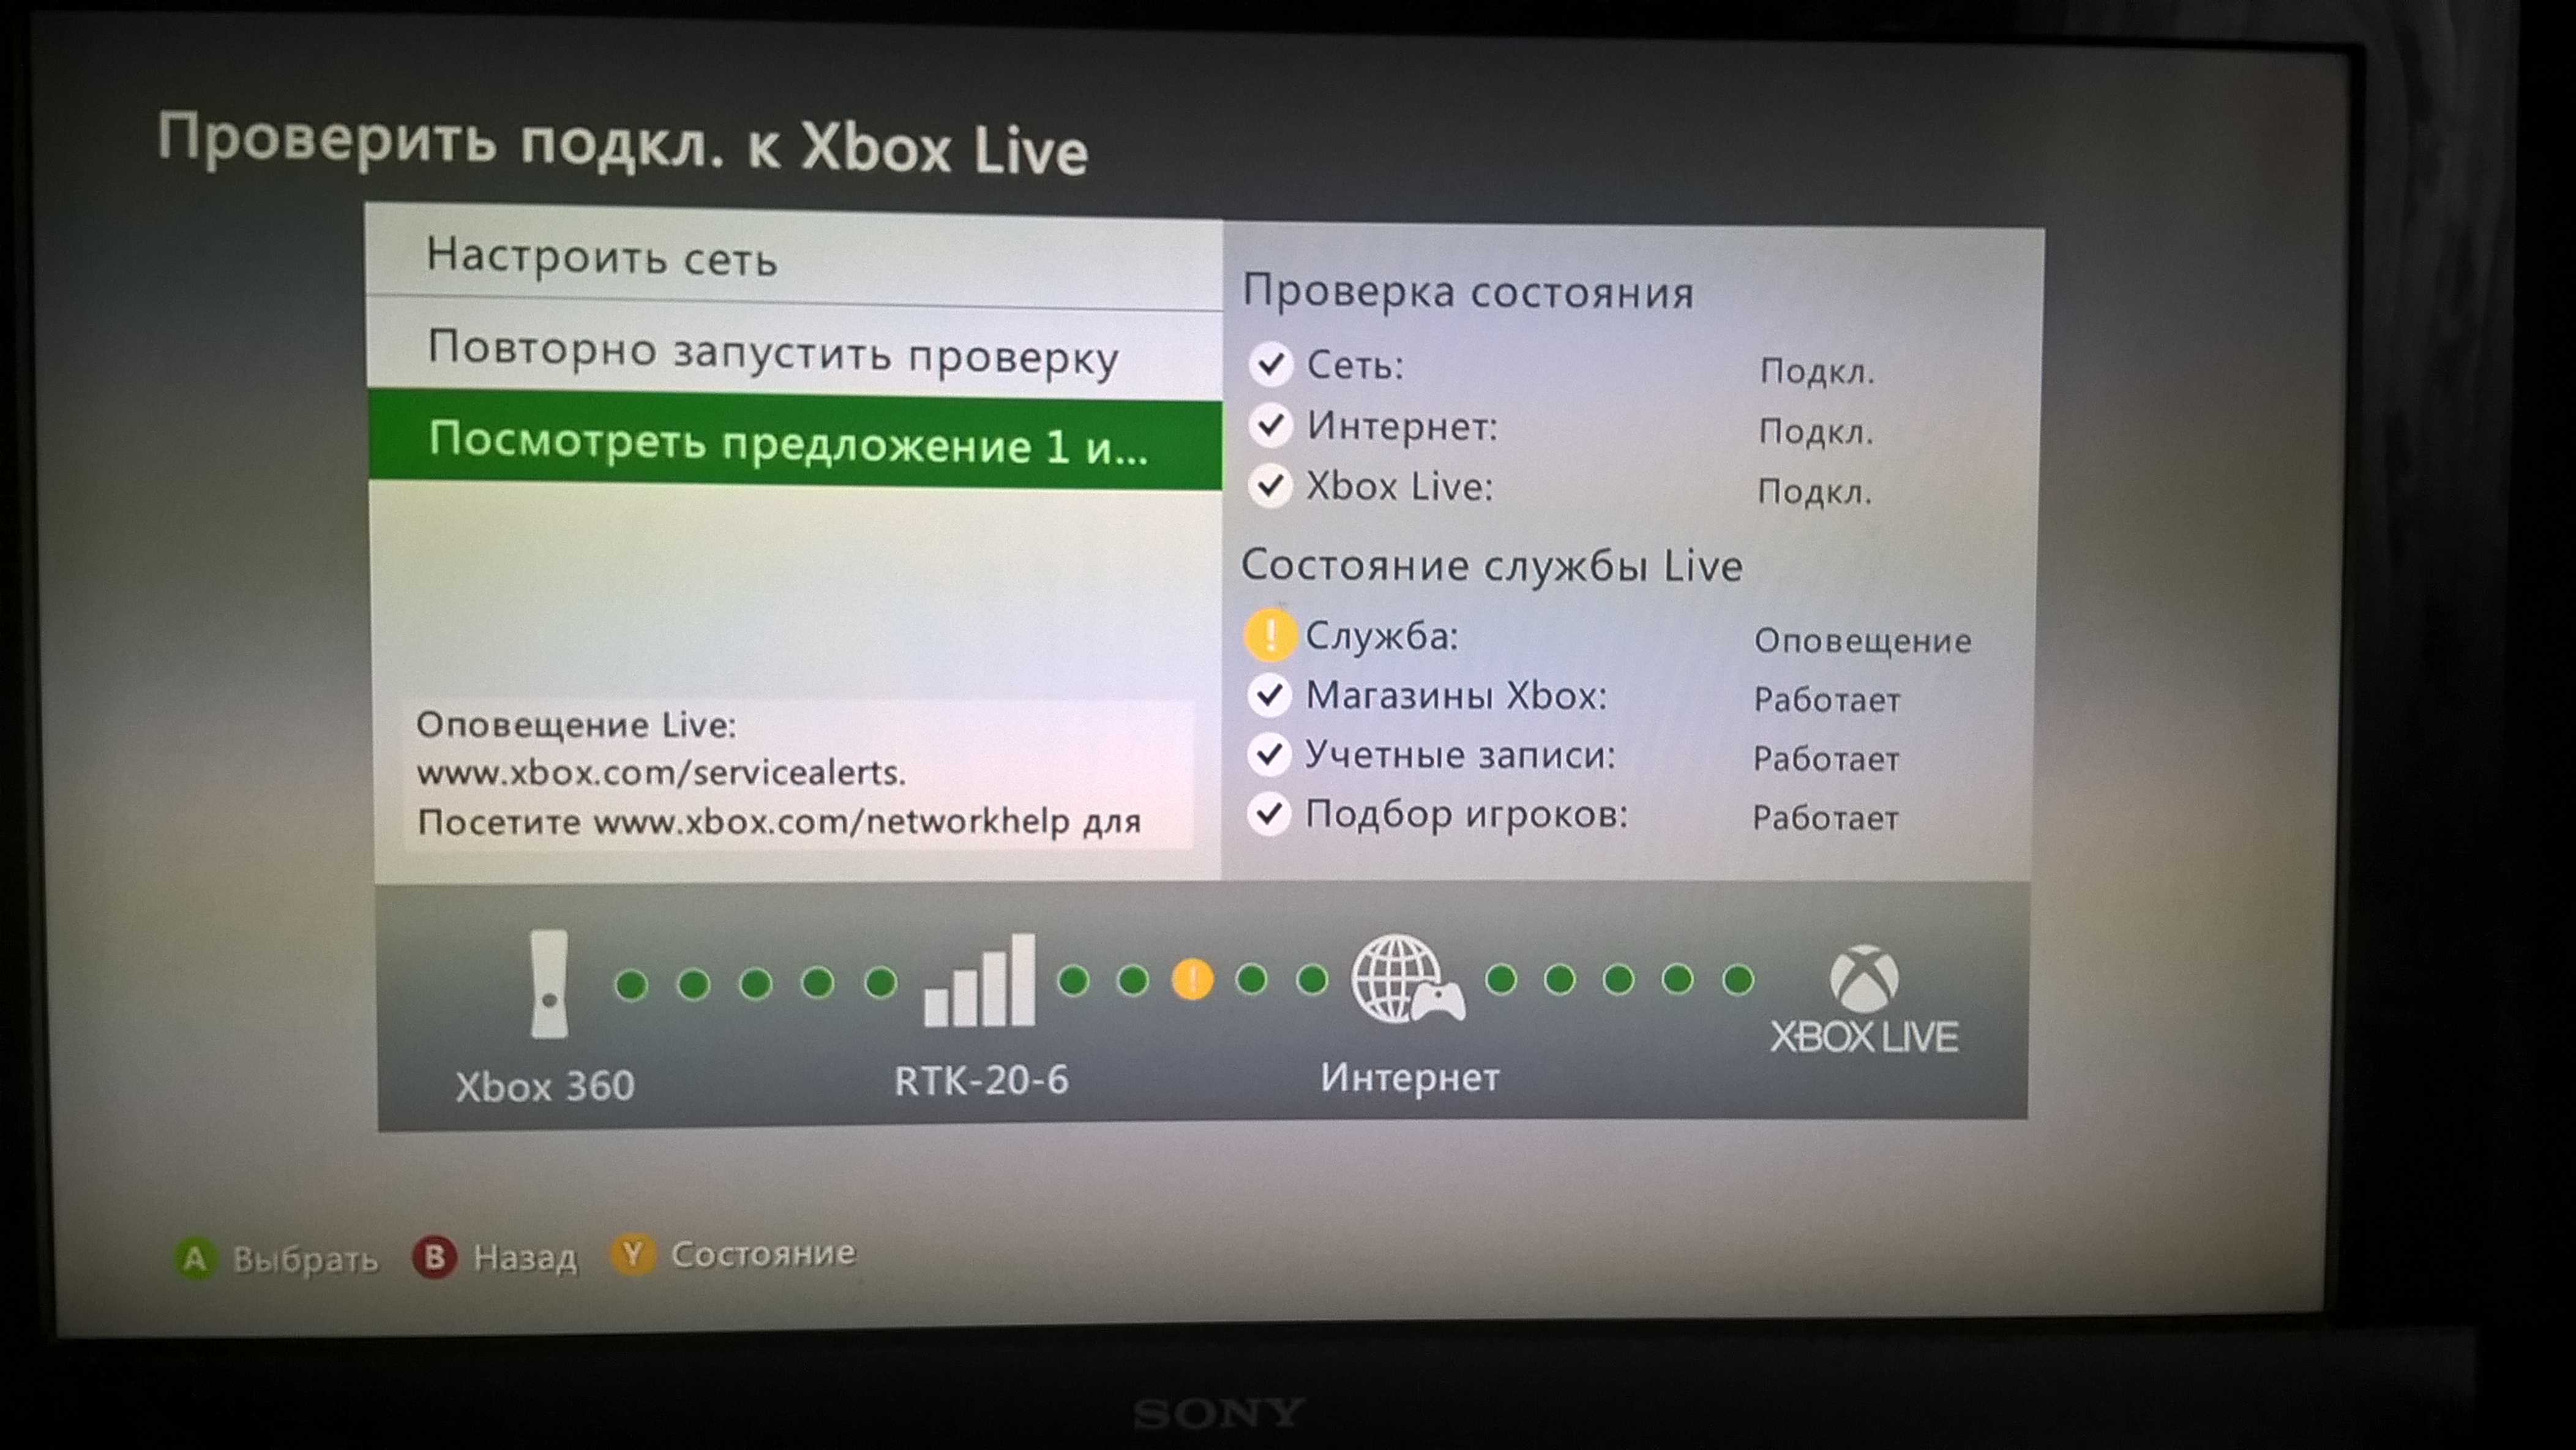 Как подключить xbox 360 к интернету. Сеть Xbox Live. Xbox 360 к Xbox Live к интернету. Икс бокс аккаунт. Профиль в Xbox Live.